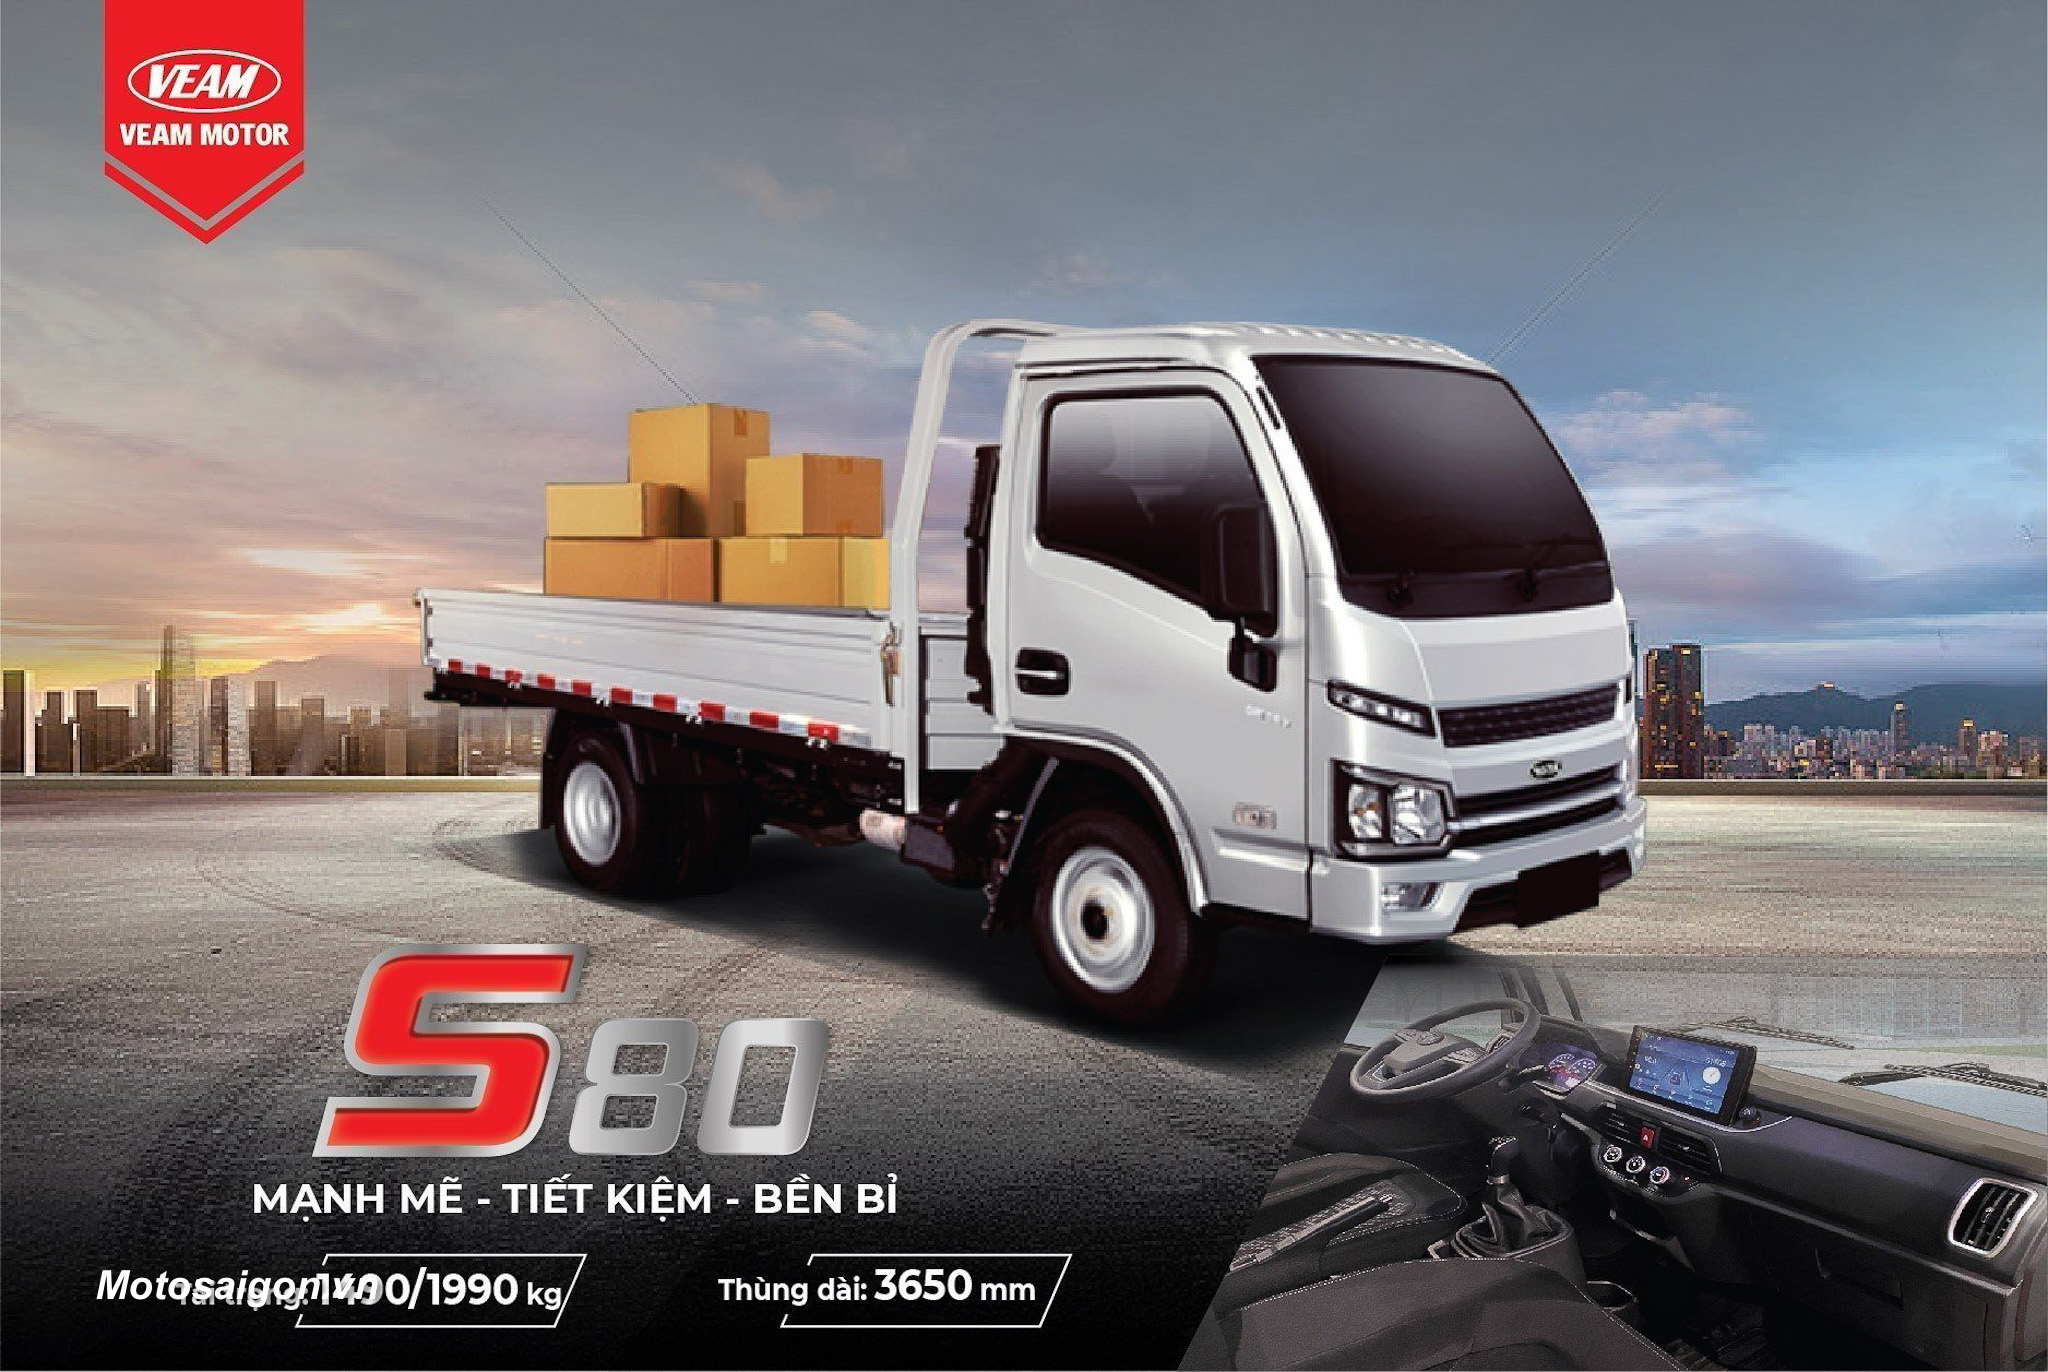 VEAM ra mắt sản phẩm mới xe tải S800 tại triển lãm Autotech & Accessories 2023